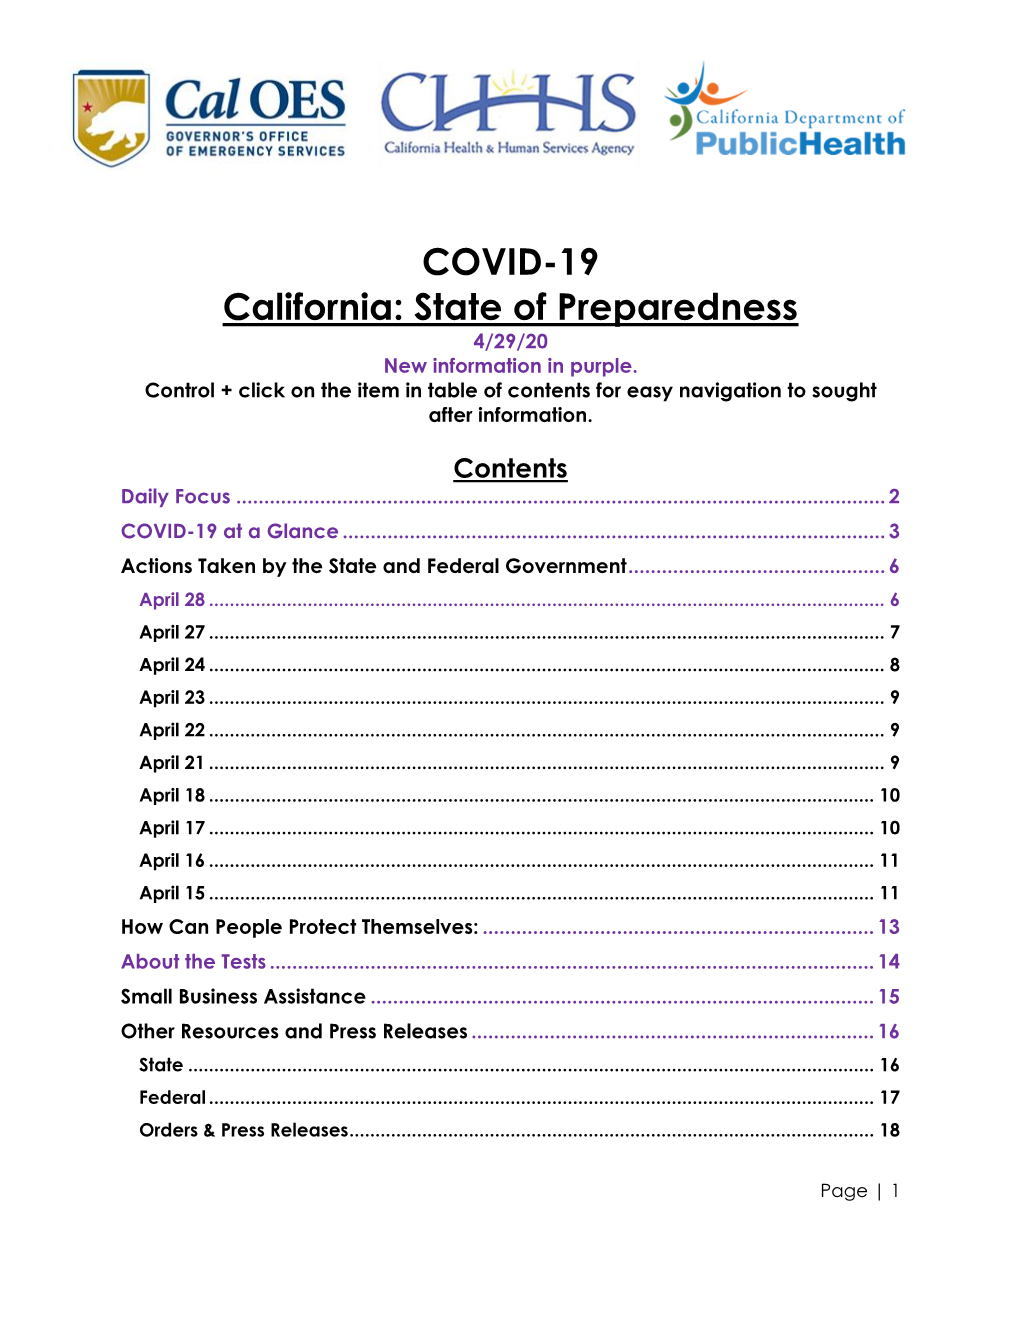 COVID-19 California: State of Preparedness 4/29/20 New Information in Purple